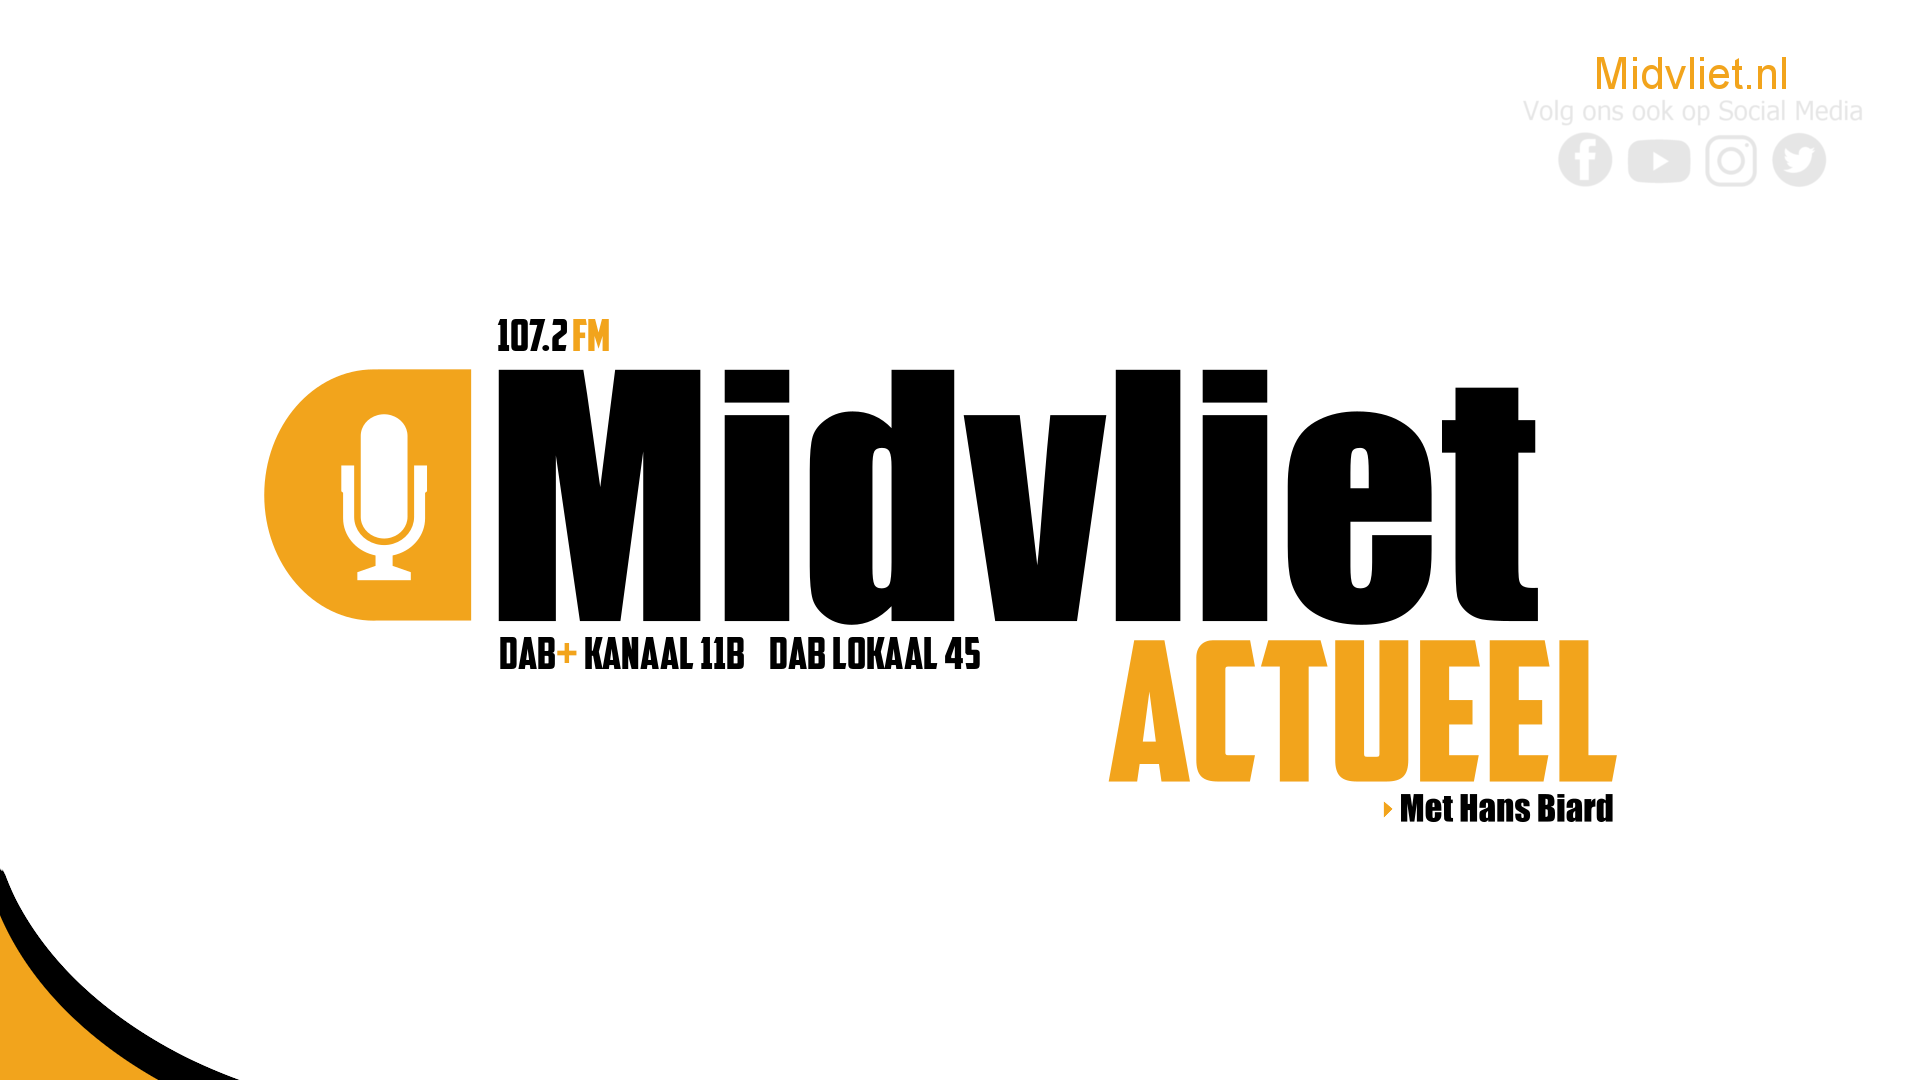 Berita terbaru dari Leidschendam-Voorburg – 16 Agustus: Berita Midvliet tentang peringatan Hindia Belanda